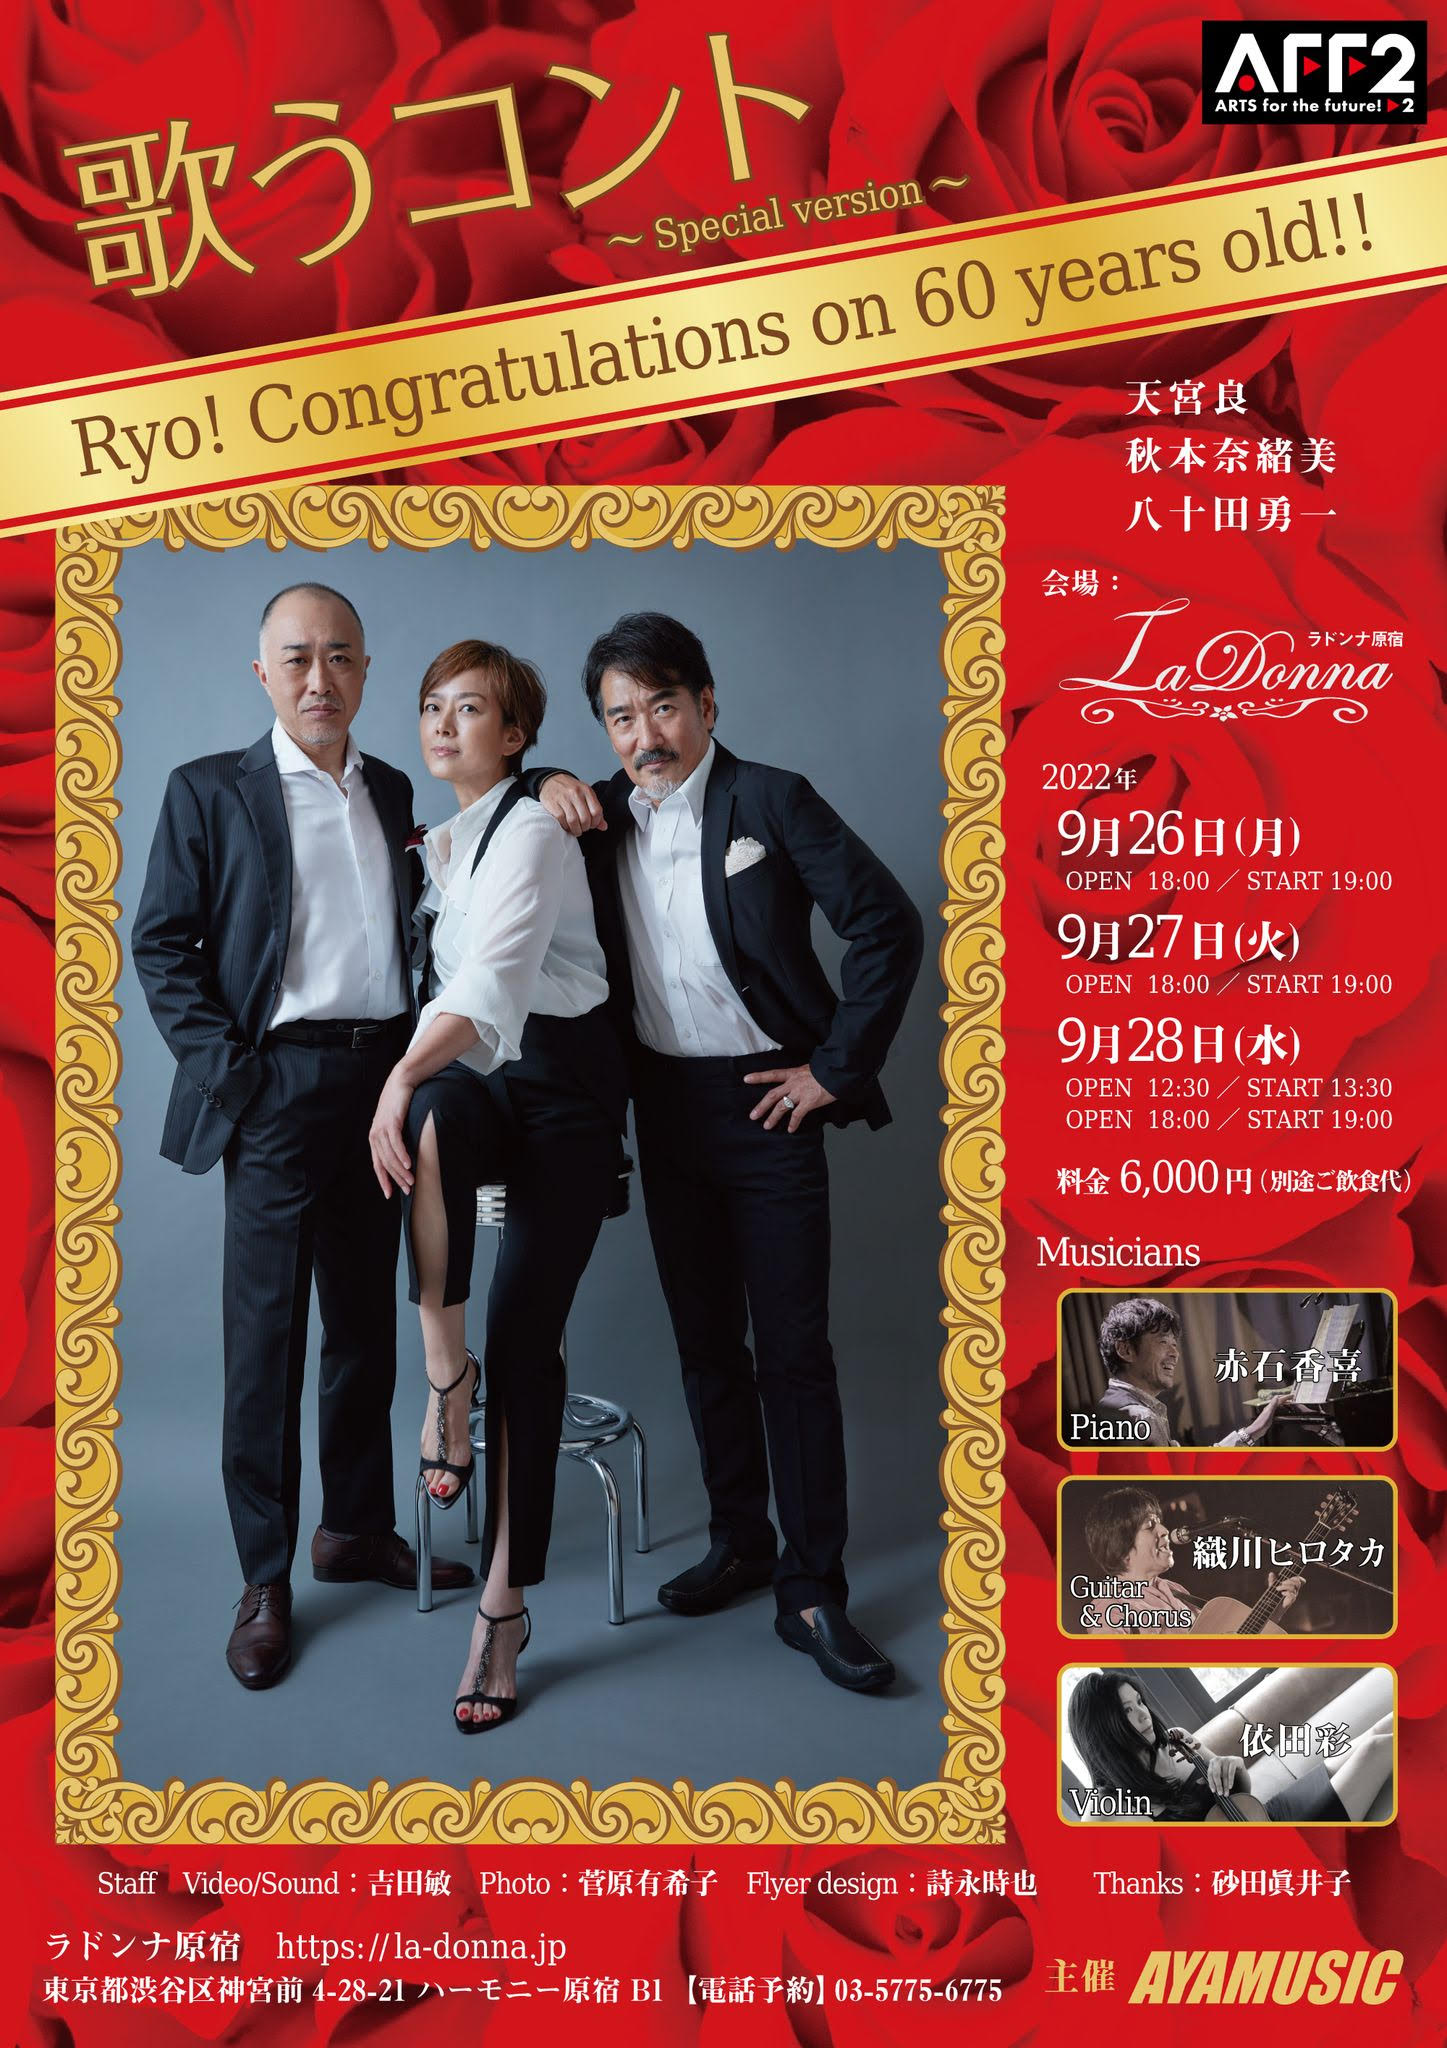 歌うコント〜Special version〜 Ryo! Congratulations on 60 years old!!